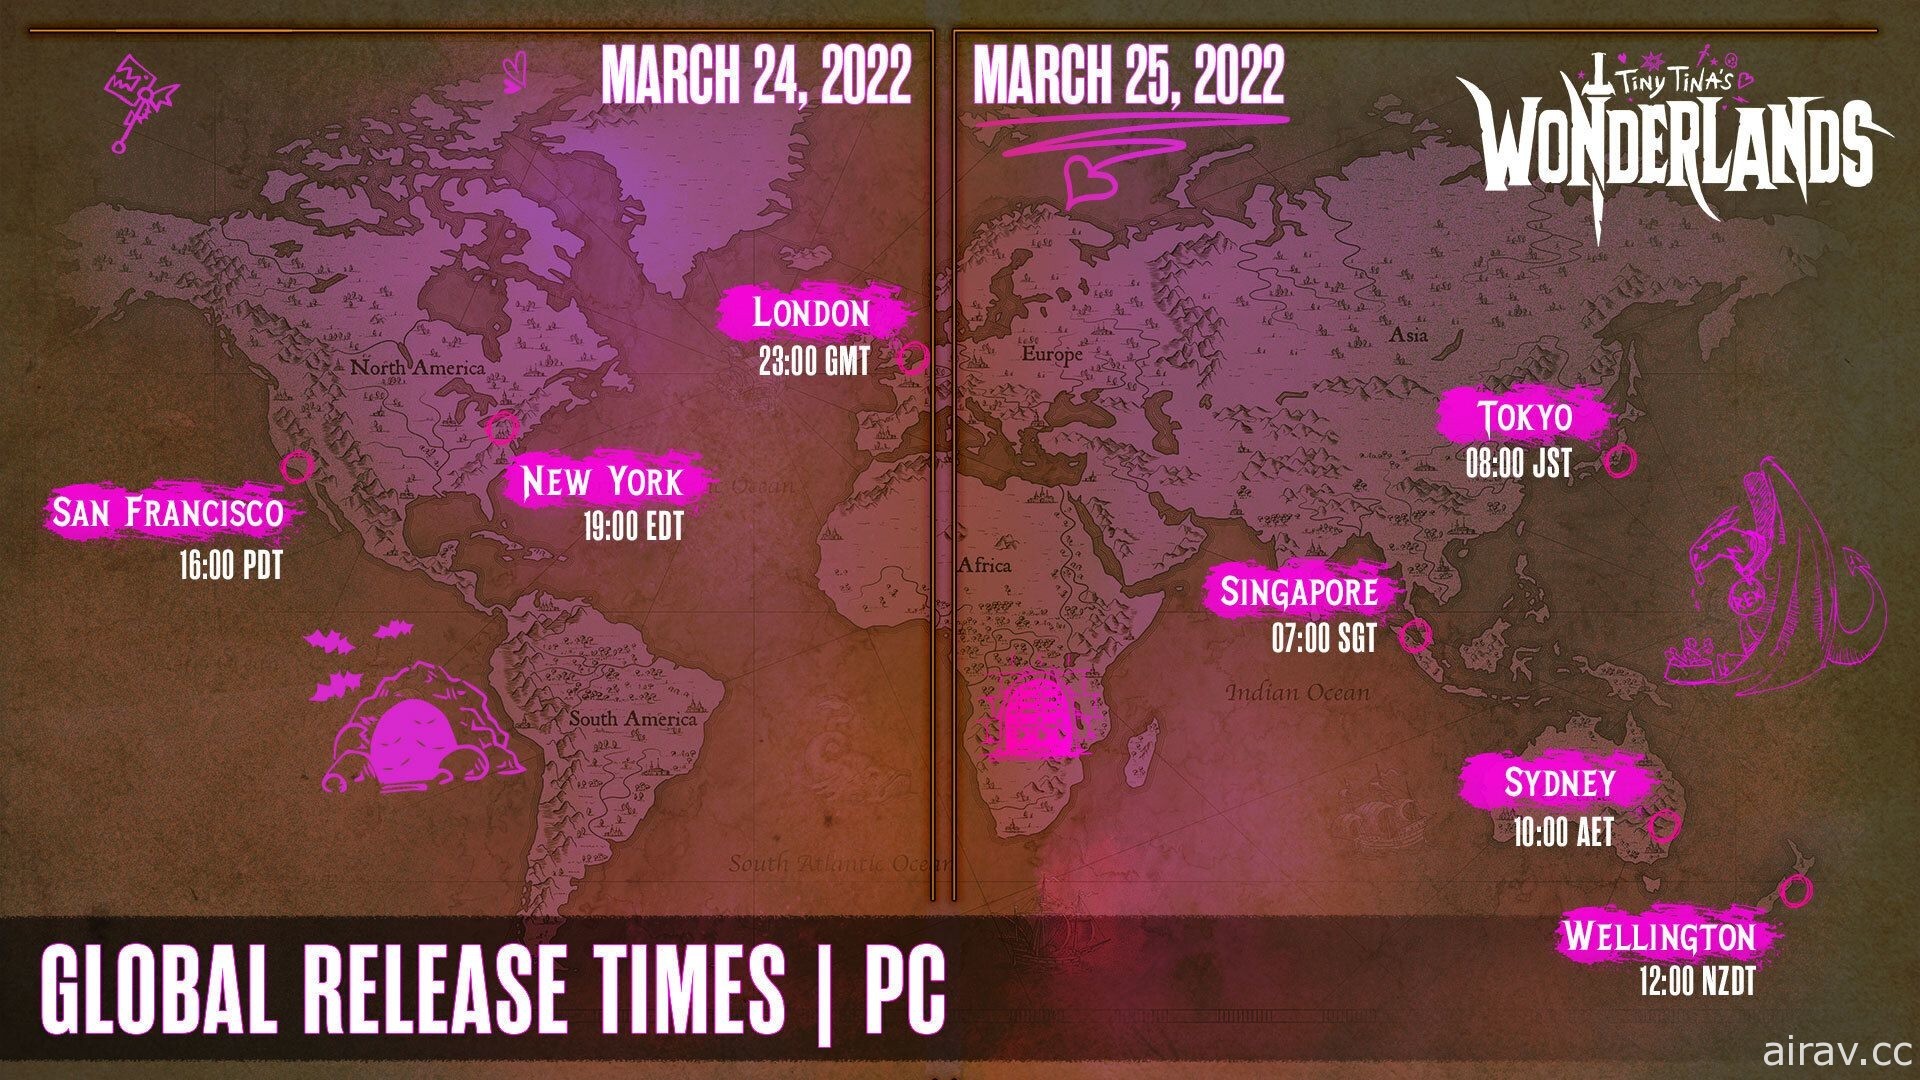 《小蒂娜的奇幻乐园》公布“跨平台游玩”以及 PC 系统需求等详细资讯